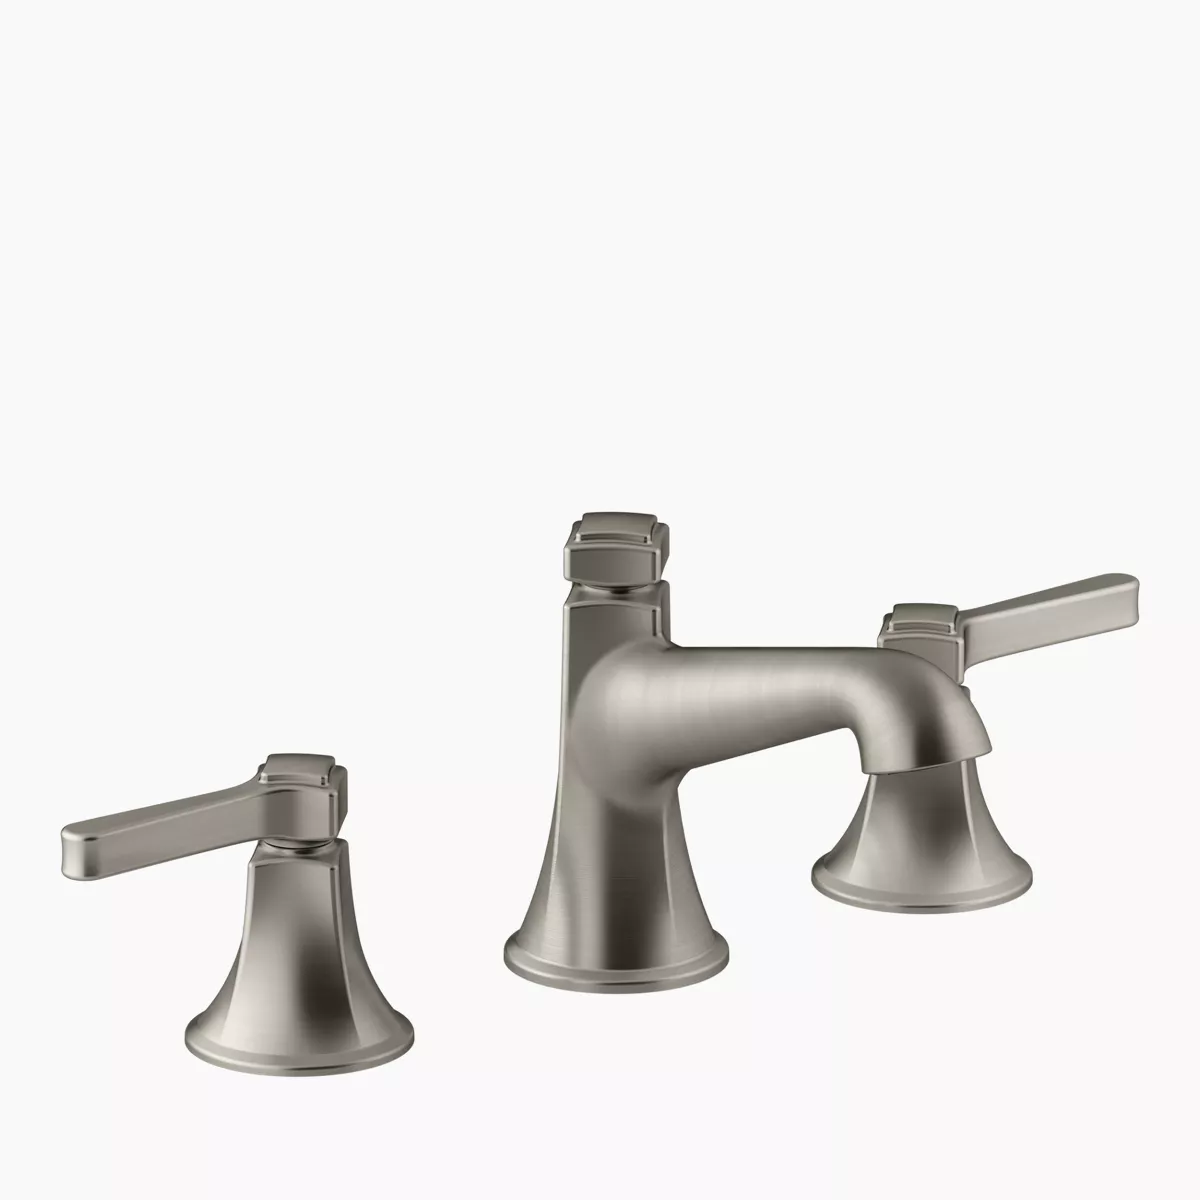 KOHLER | K-6228-C11 | Karbon Articulating Kitchen Sink Faucet with 